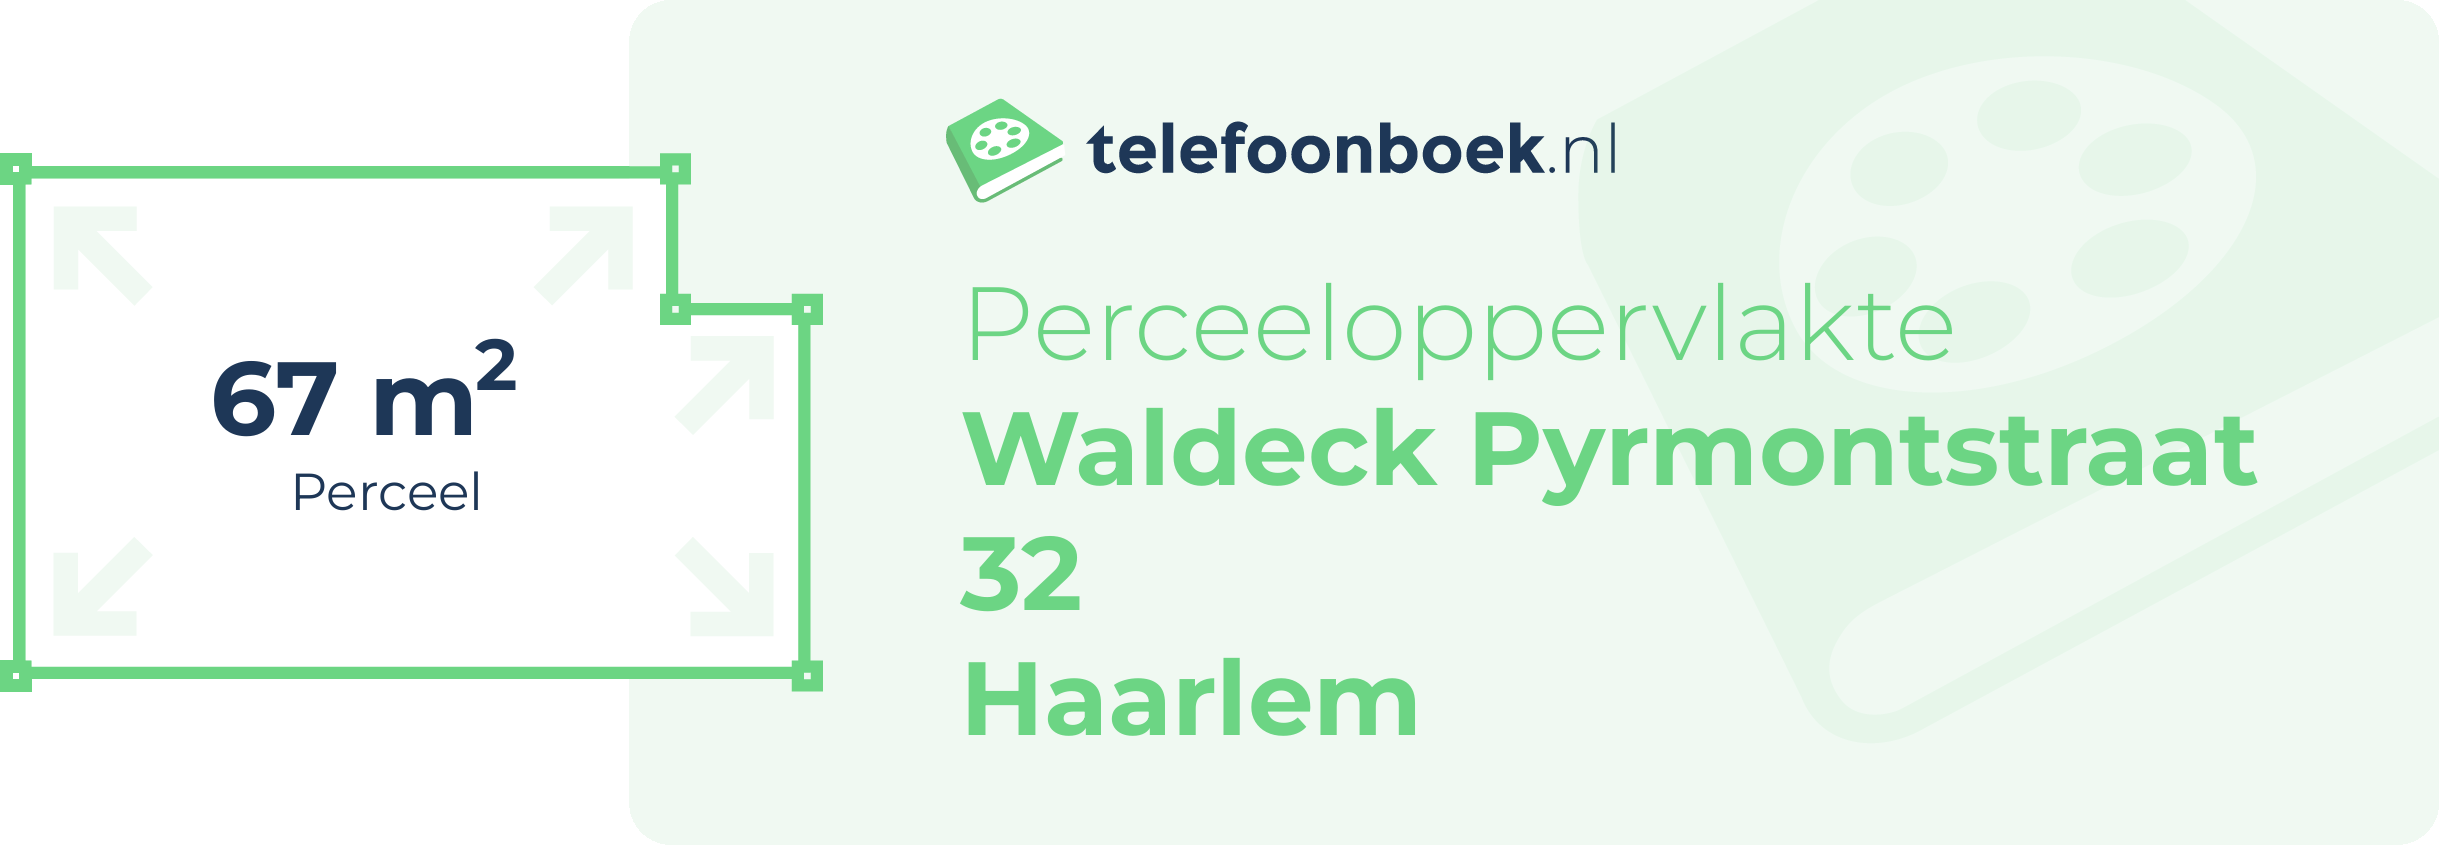 Perceeloppervlakte Waldeck Pyrmontstraat 32 Haarlem